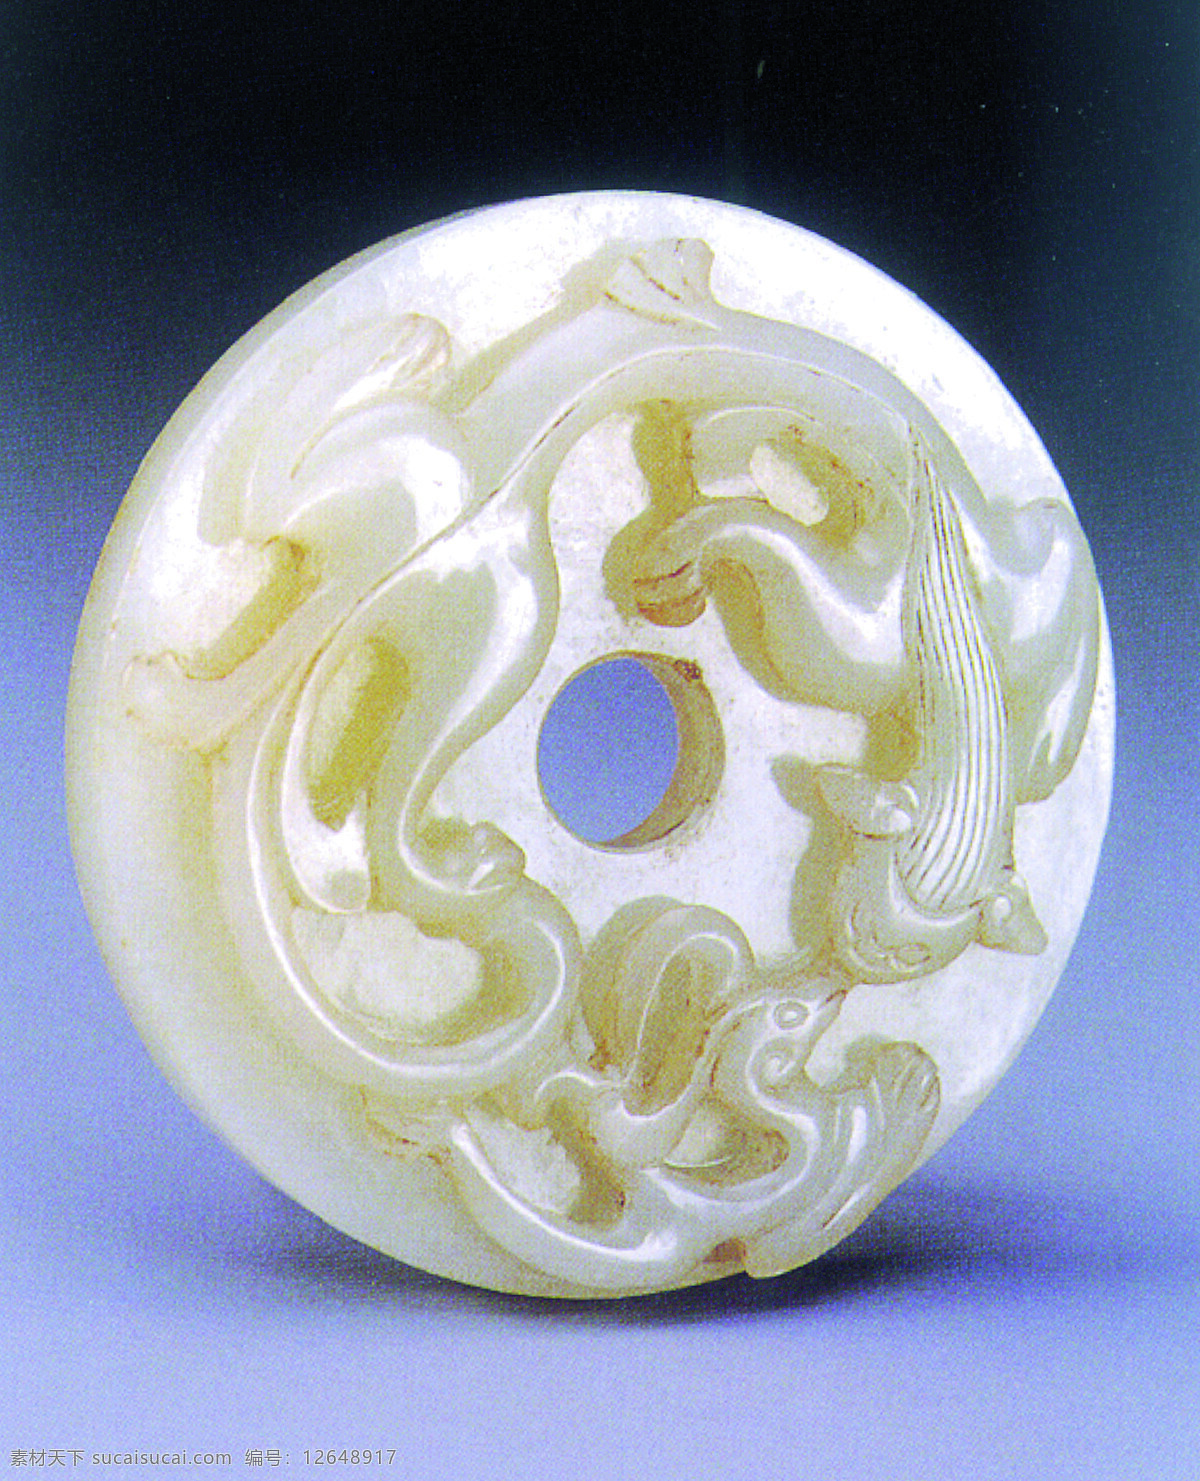 玉器图片 传统 中国元素 工艺品 玉器 玉环 玉佩 古玉 中国 古典 艺术 篇 玉 文化艺术 传统文化